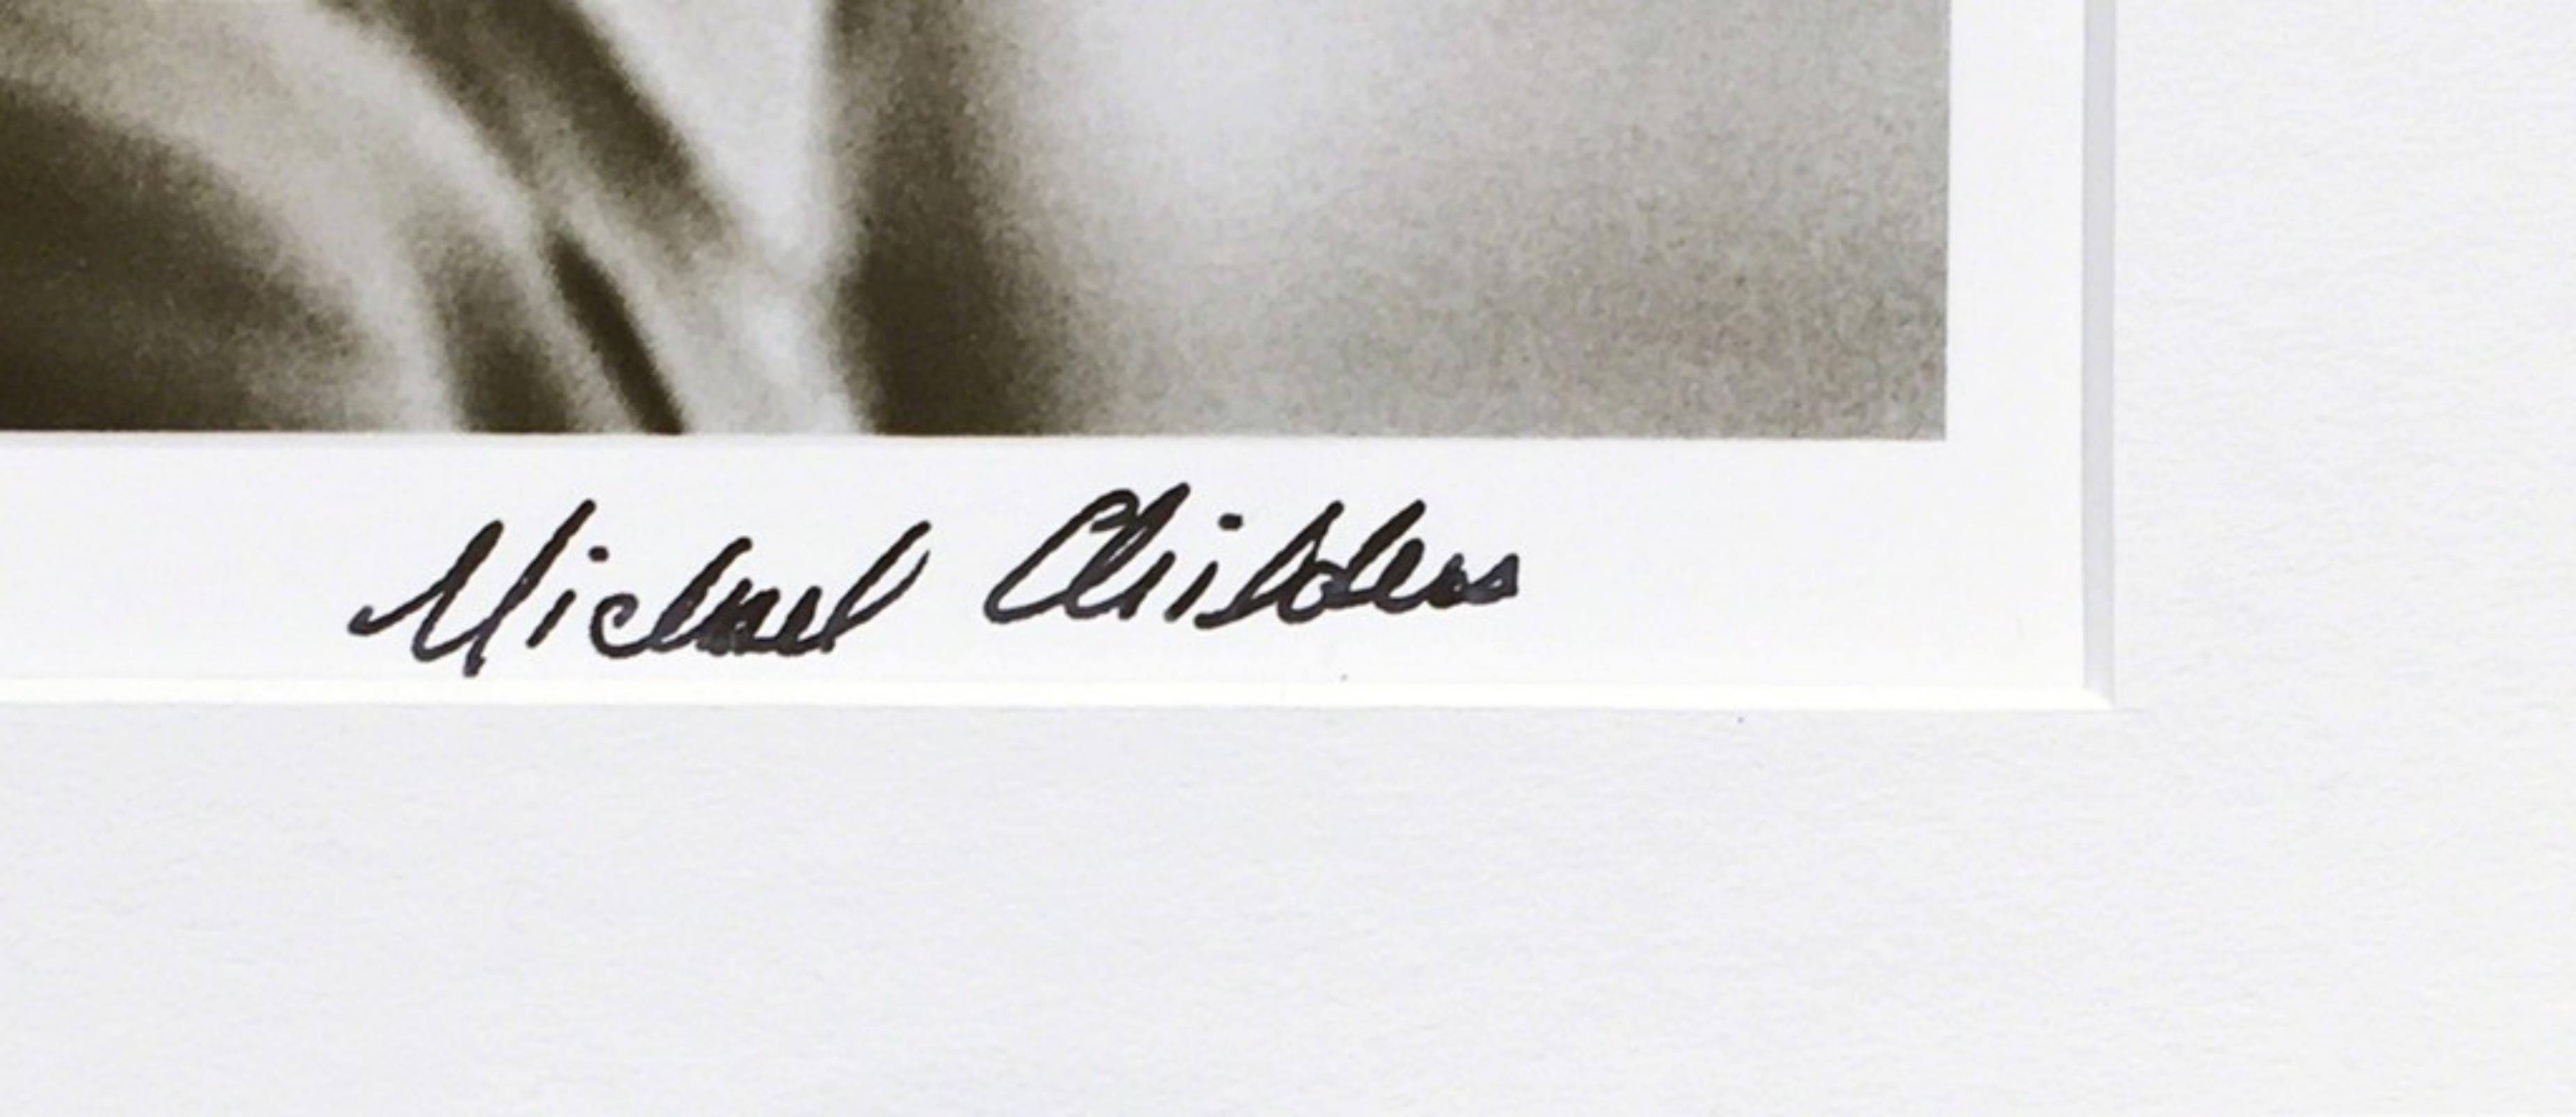 MICHAEL CHILDERS
Andy Warhol in seinem New Yorker Studio, 1976
Fotodruck
Gedruckt im Jahr 2007 
Auf der Vorderseite mit schwarzem Filzstift vom Fotografen Michael Childers fett signiert
Inklusive Rahmen: im Originalrahmen, den der Fotograf dem Palm